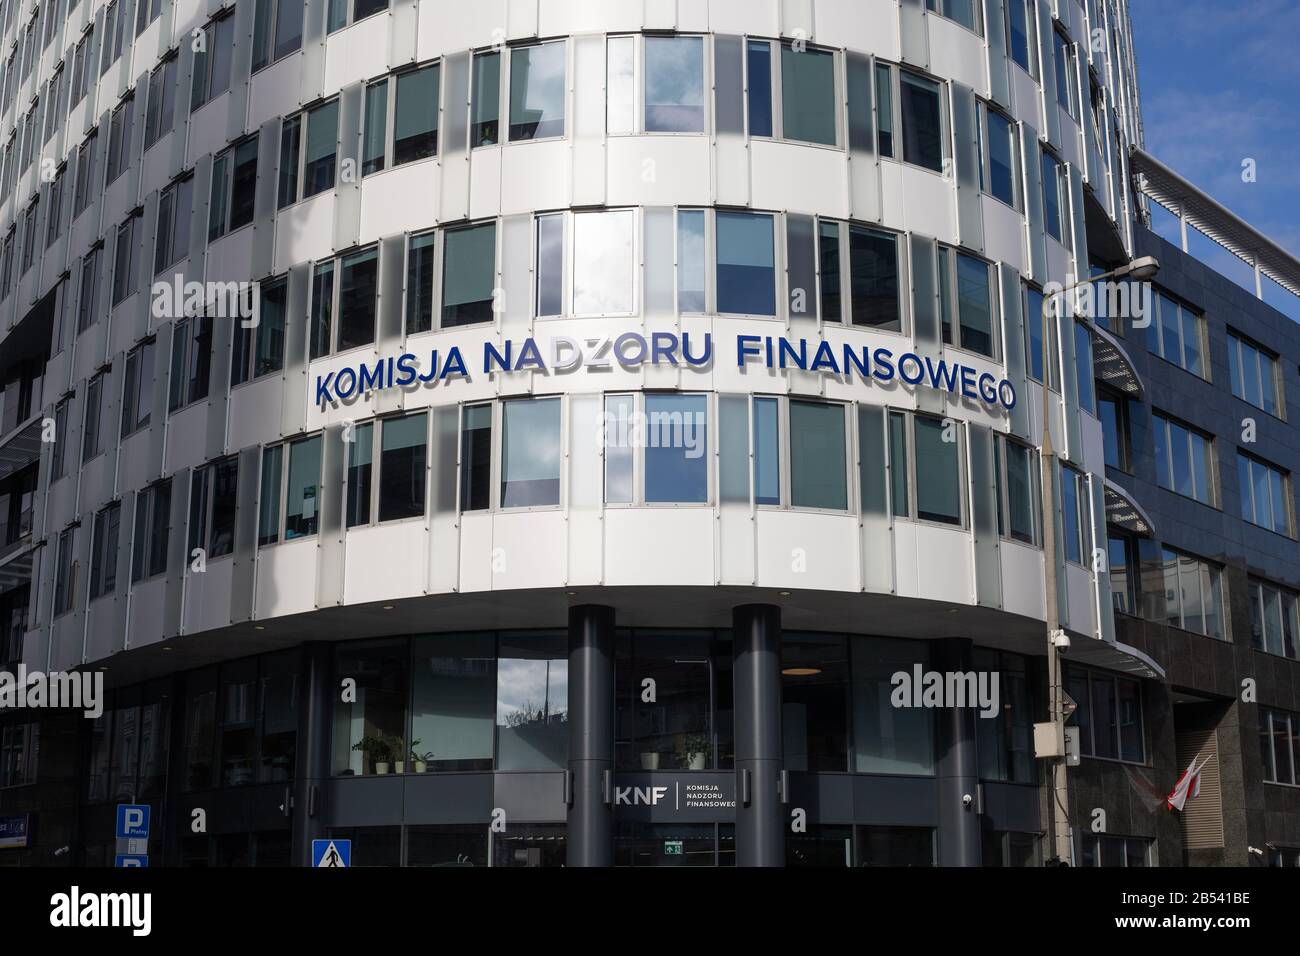 VARSOVIA/POLONIA - 5 DE MARZO de 2019: Opinión sobre la Oficina de la Autoridad Polaca de Supervisión Financiera (KNF, Komisja Nadzoru Finansowego) Foto de stock